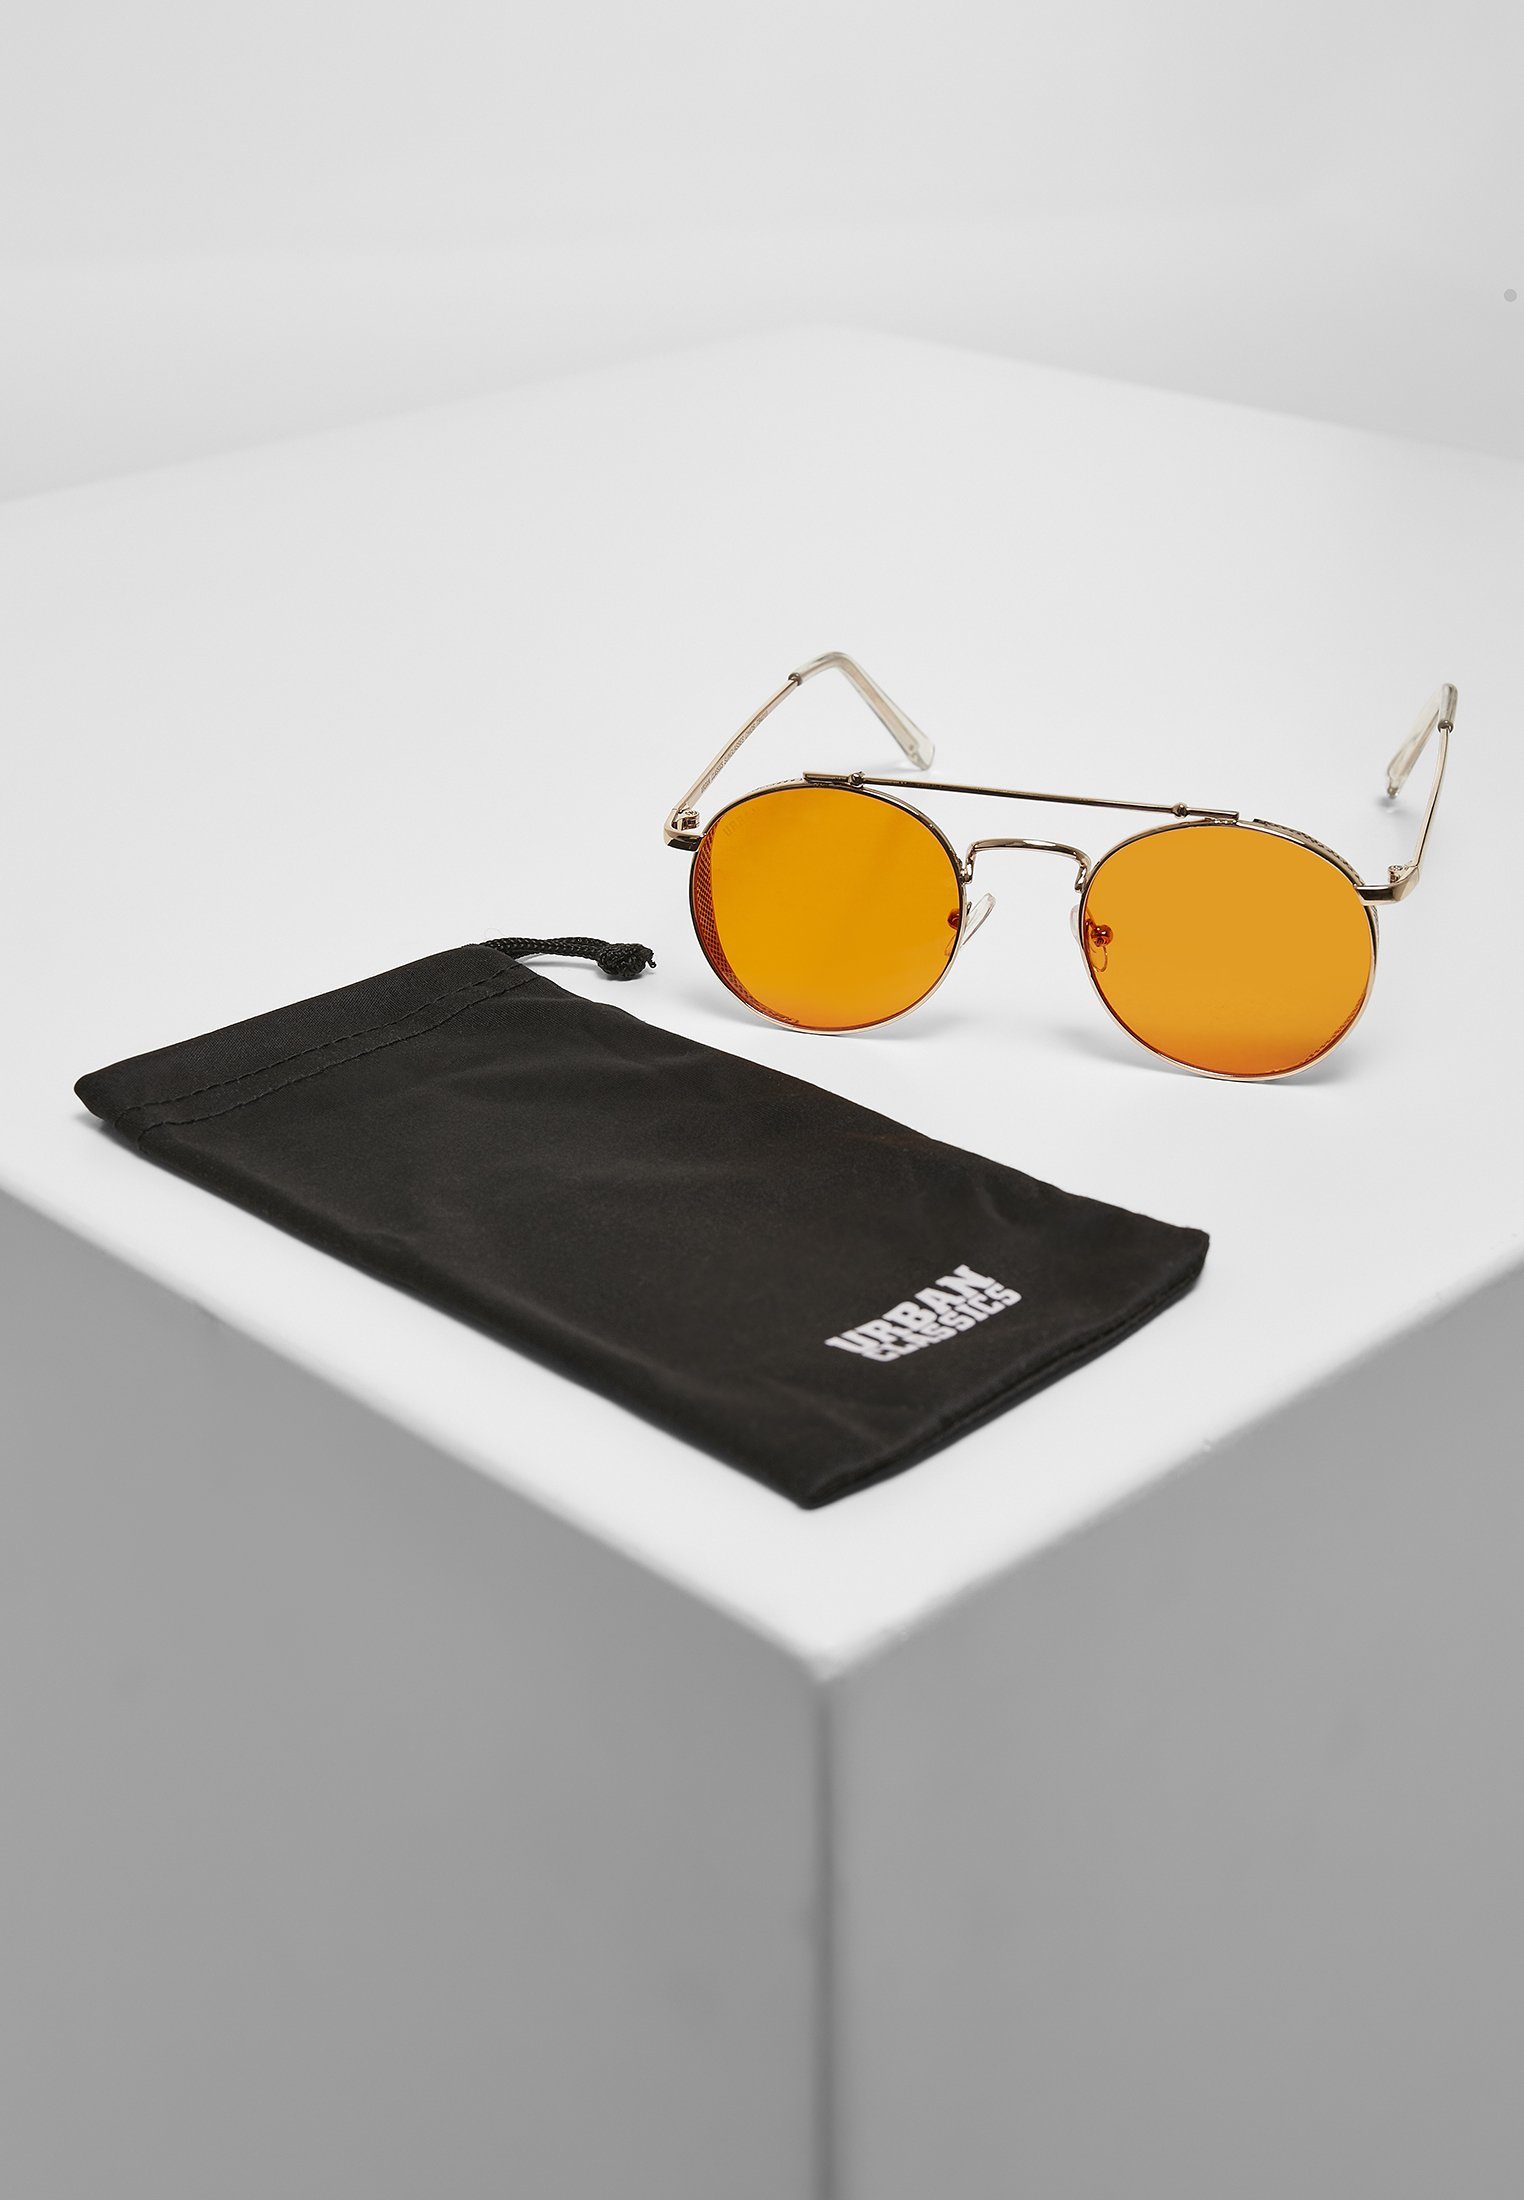 URBAN Sonnenbrille Unisex Sunglasses gold/orange Chios CLASSICS